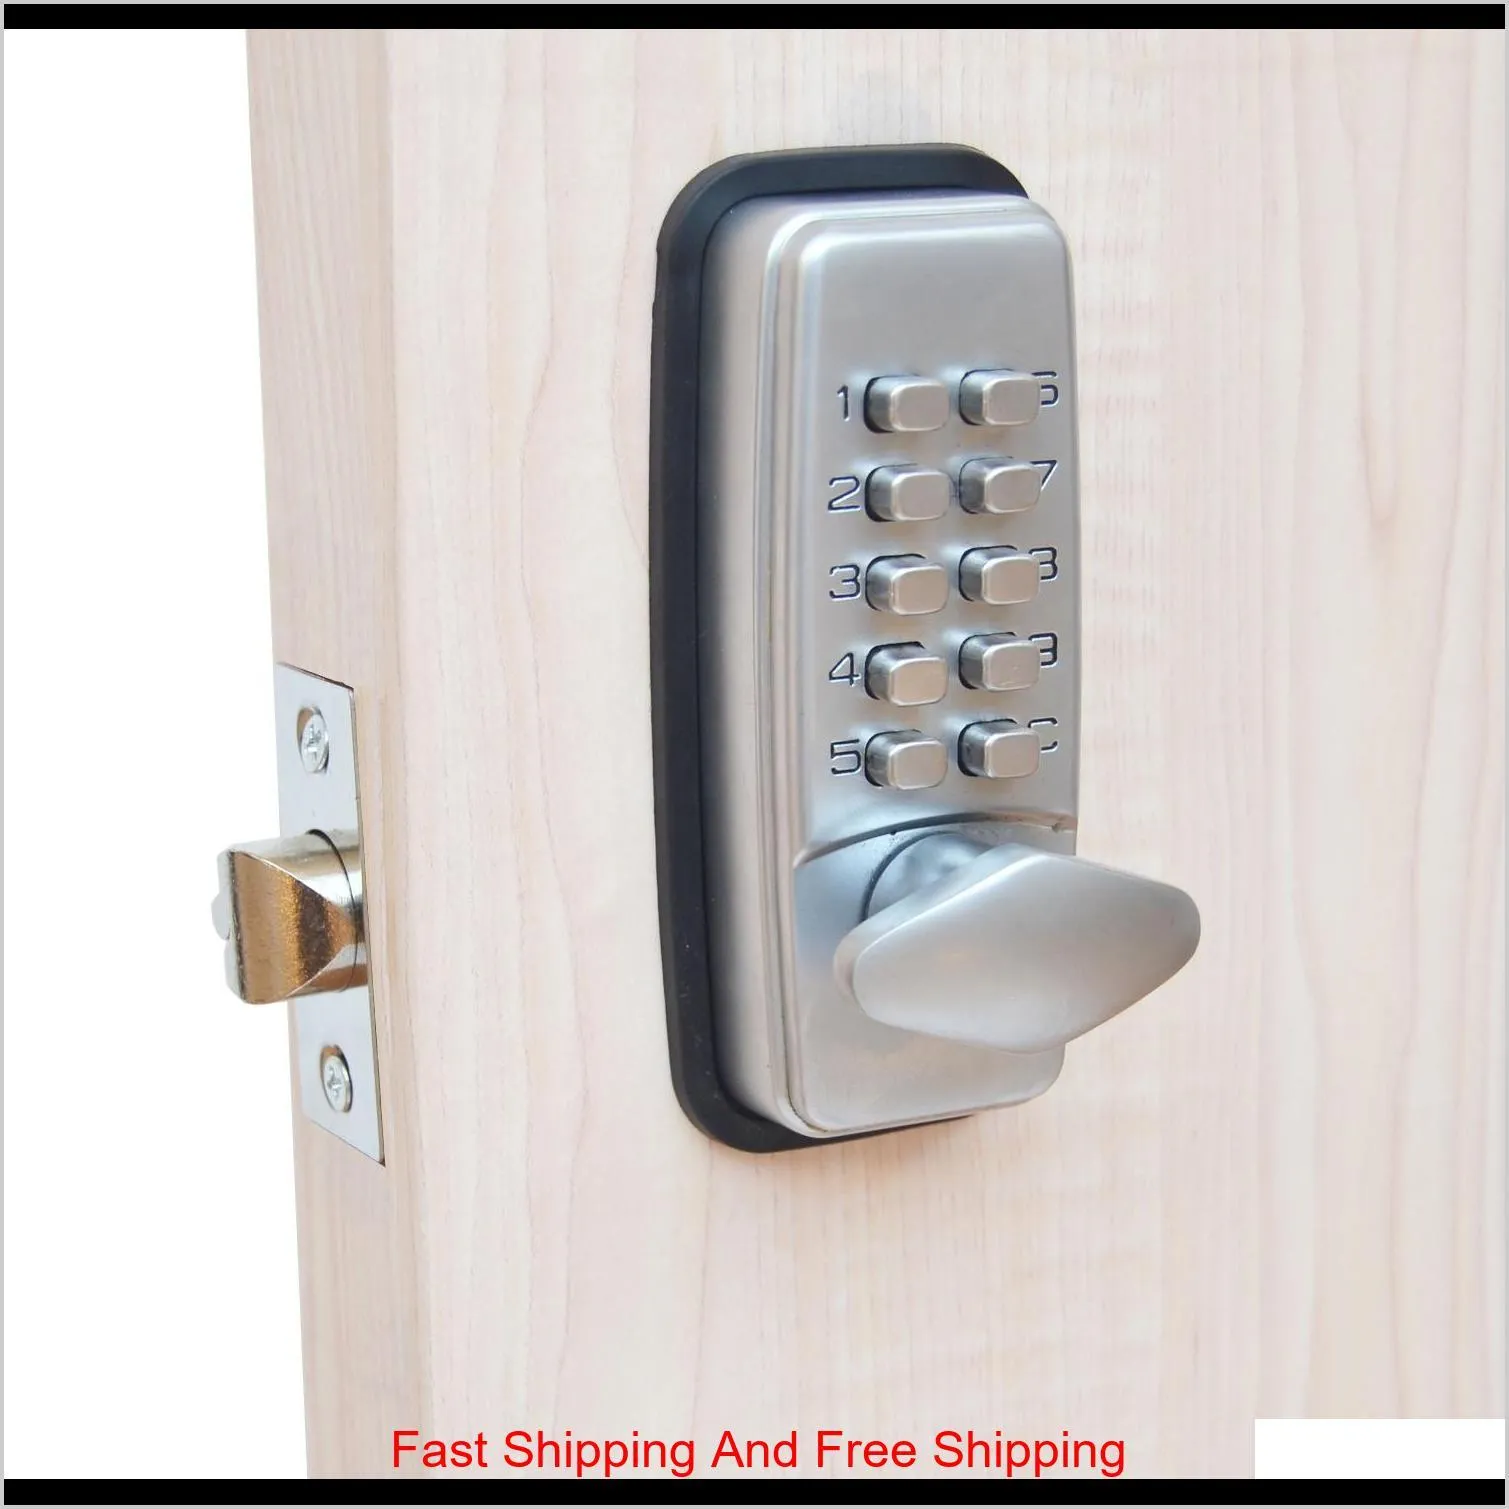 ml01sp mechanical password door lock,code lock, combination lock,zinc alloy,silvery